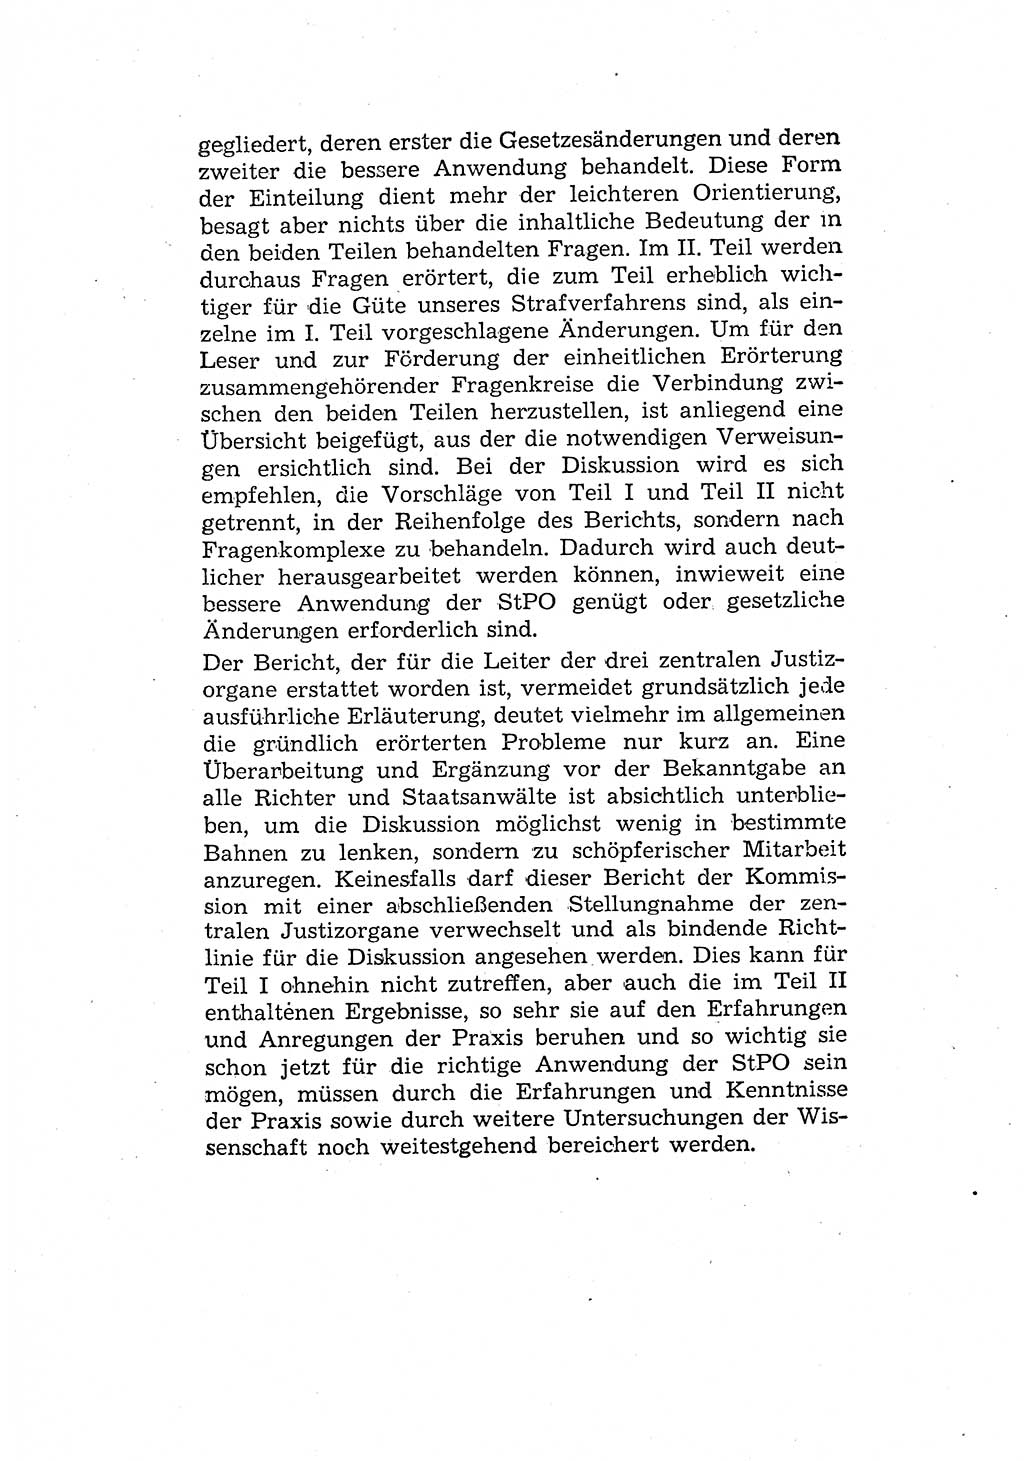 Bericht der Kommission zur Überprüfung der Anwendung der StPO (Strafprozeßordnung) [Deutsche Demokratische Republik (DDR)] 1956, Seite 4 (Ber. StPO DDR 1956, S. 4)